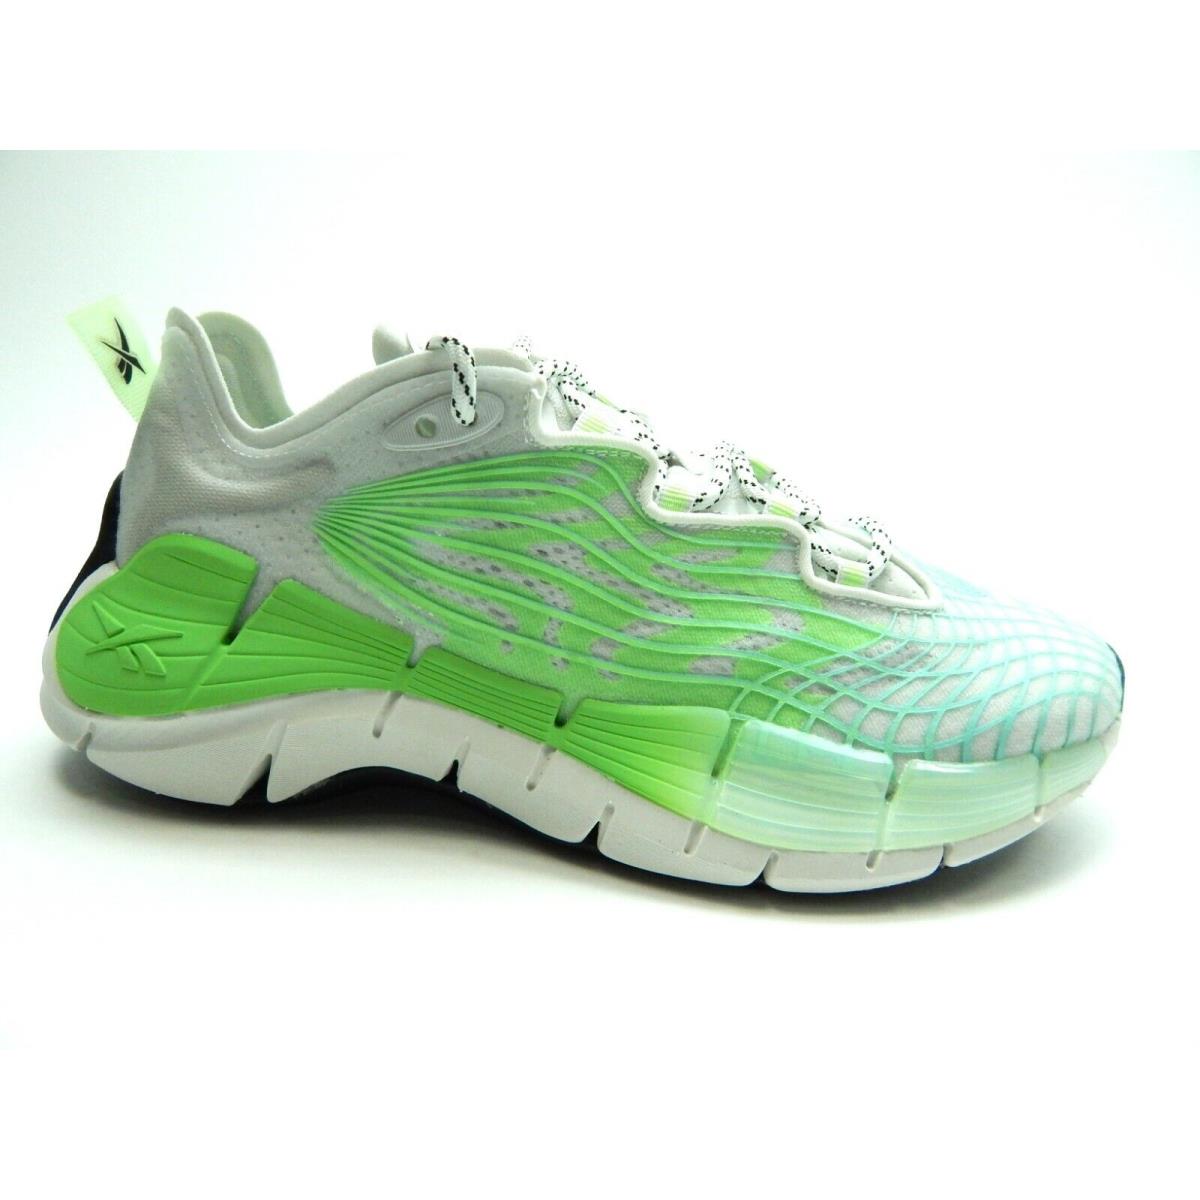 Reebok Zig Kinetica II Neon Mint FX9406 Running Women Shoes Size 6